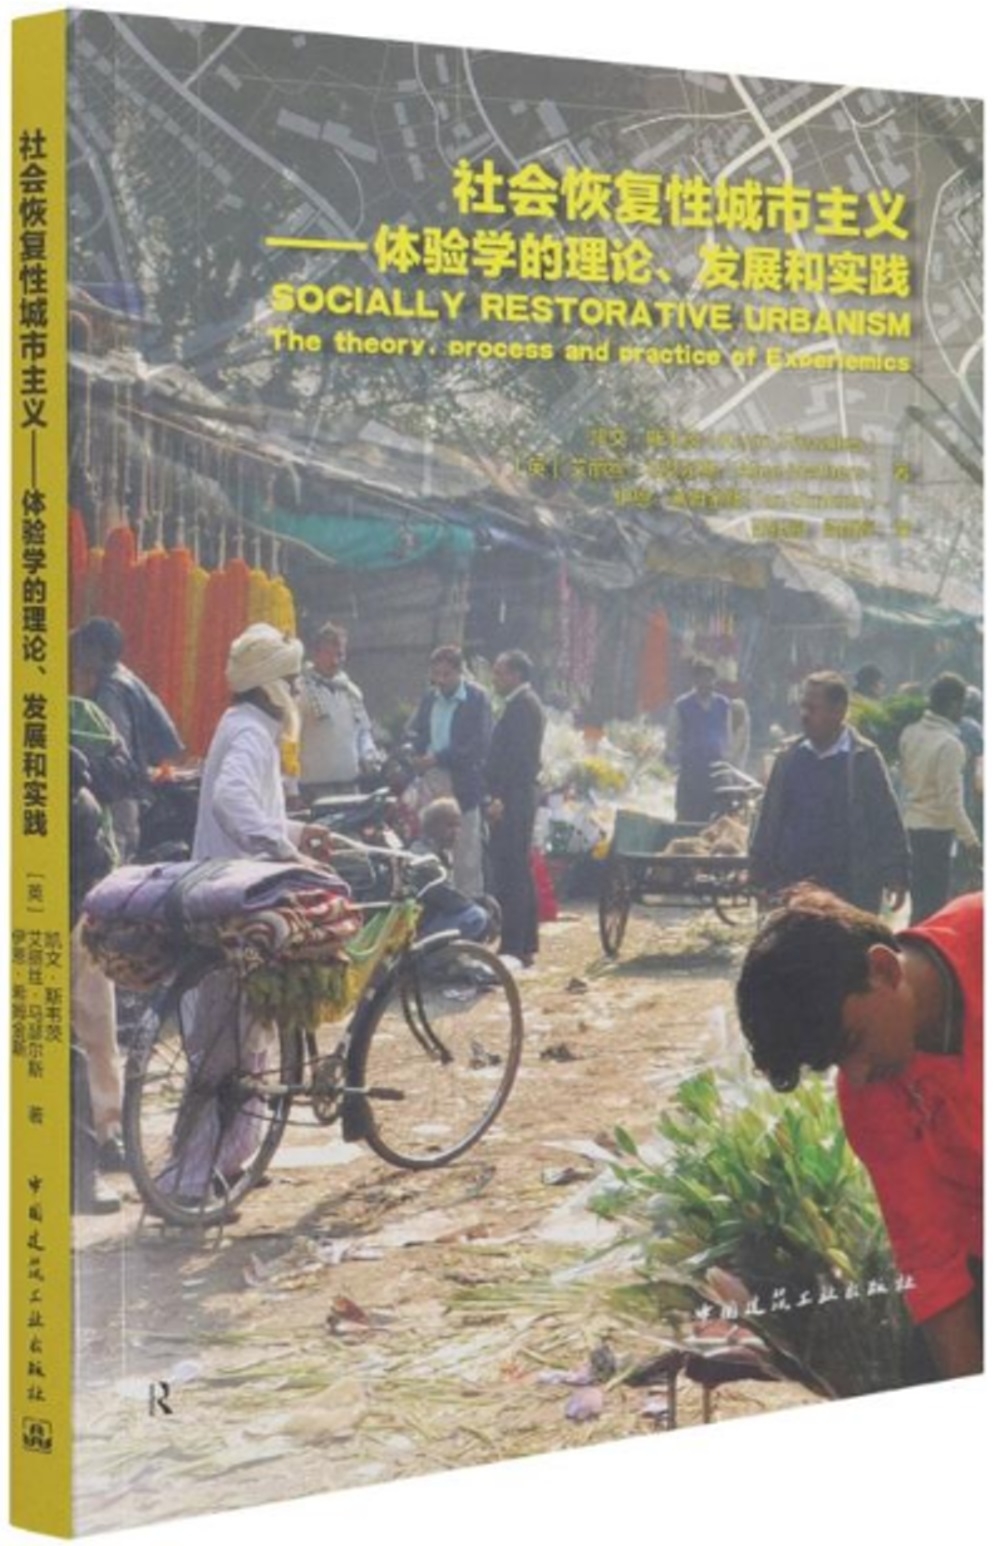 社會恢復性城市主義--體驗學的理論、發展和實踐